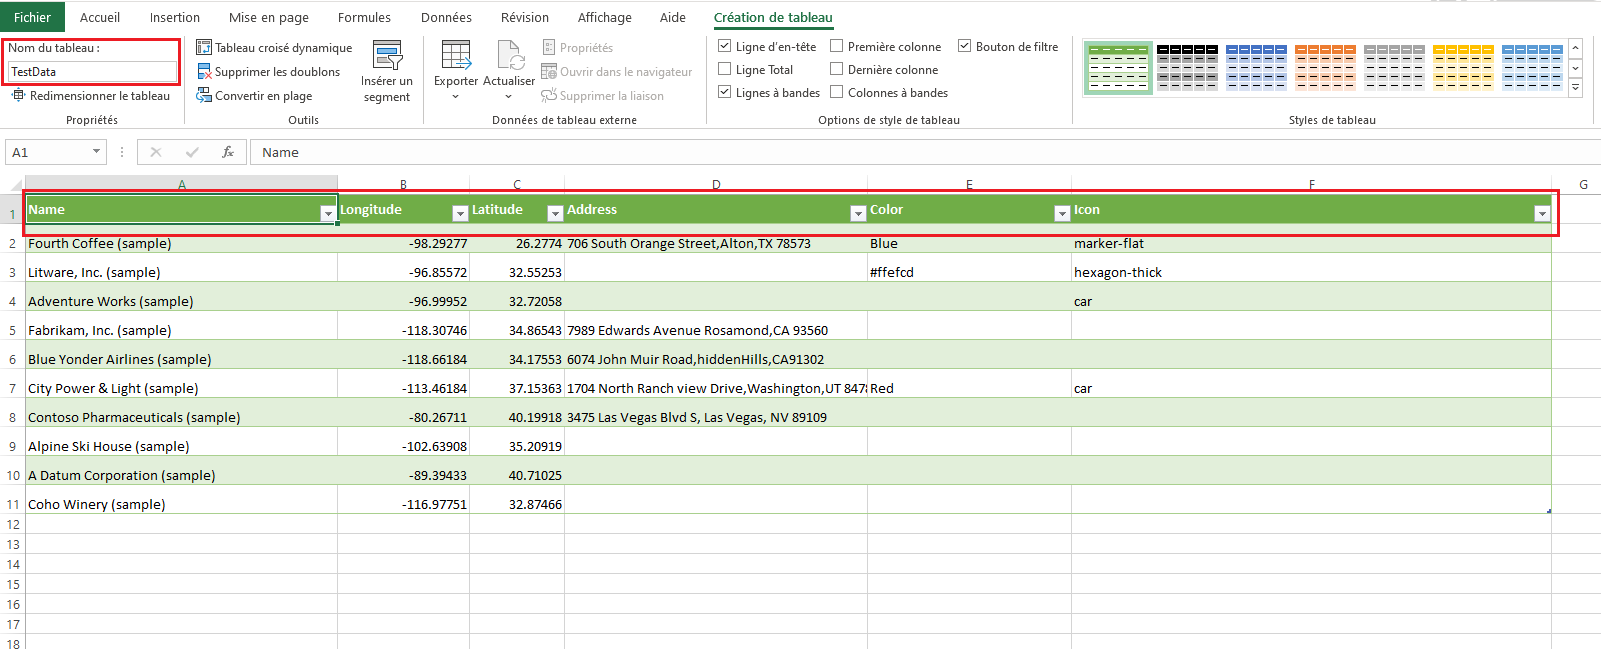 Exemple de fichier Excel avec une table nommée TestData et contenant les colonnes Nom, Longitude et Latitude